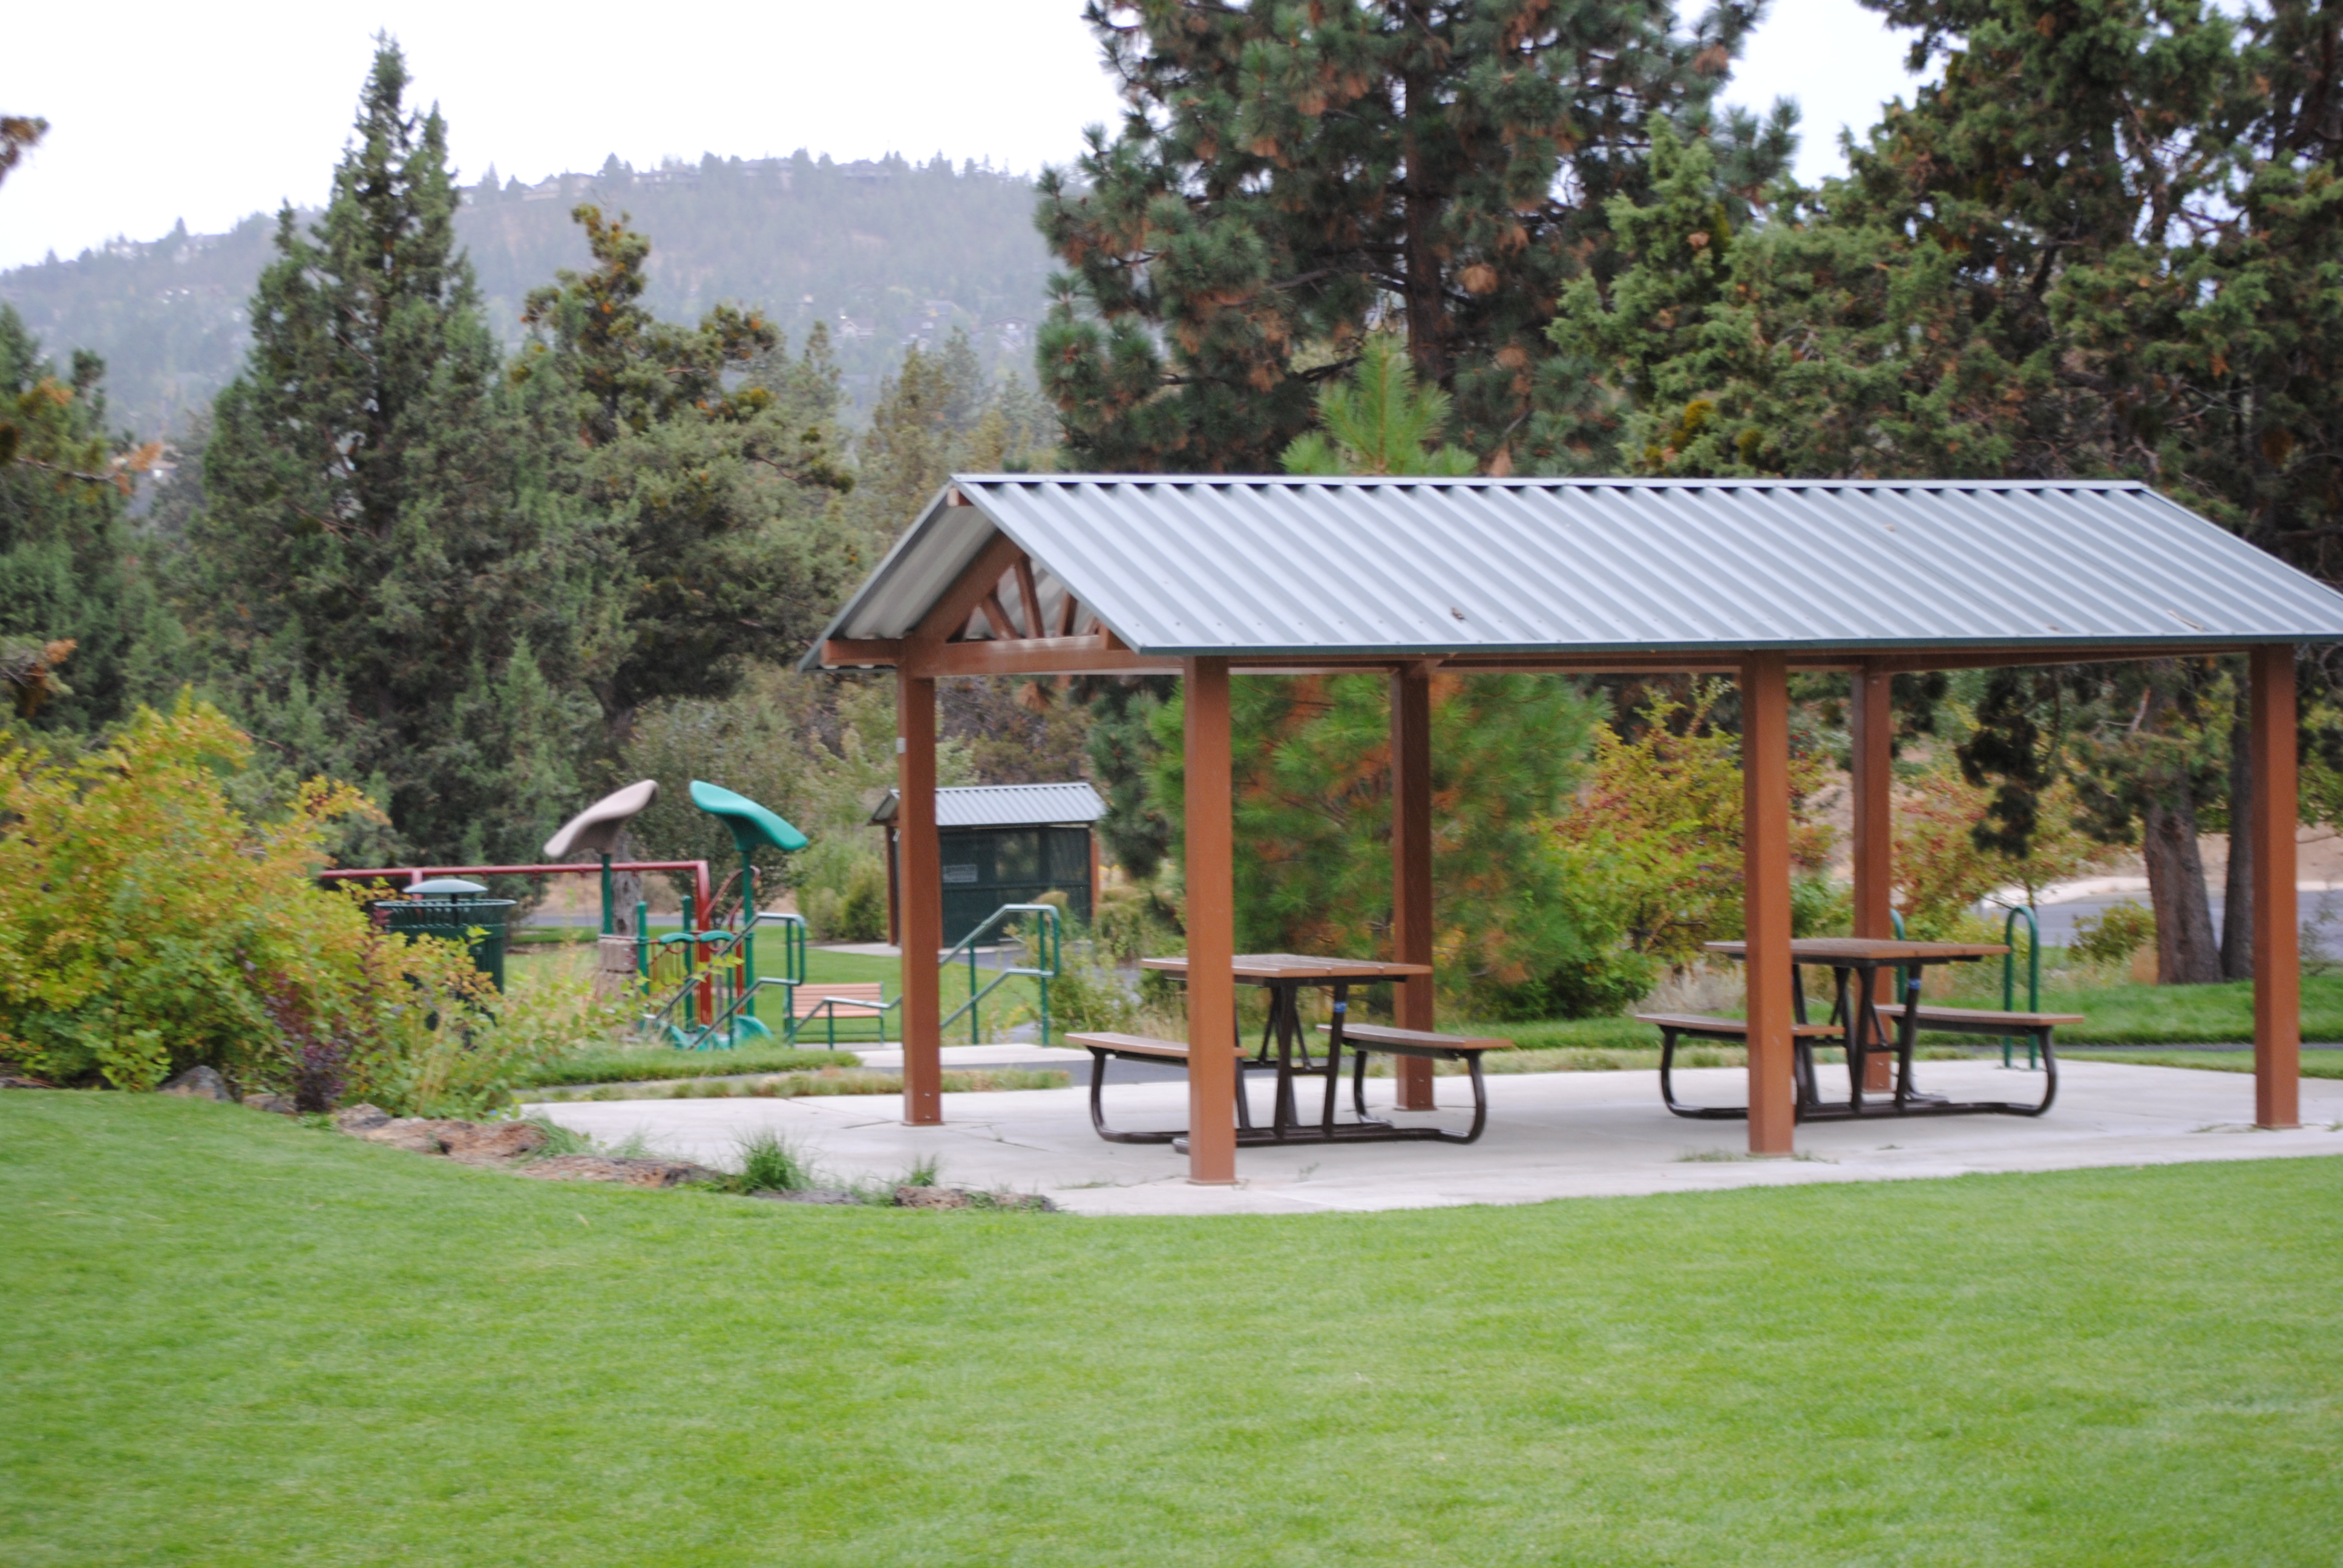 a picnic shelter at harvest park